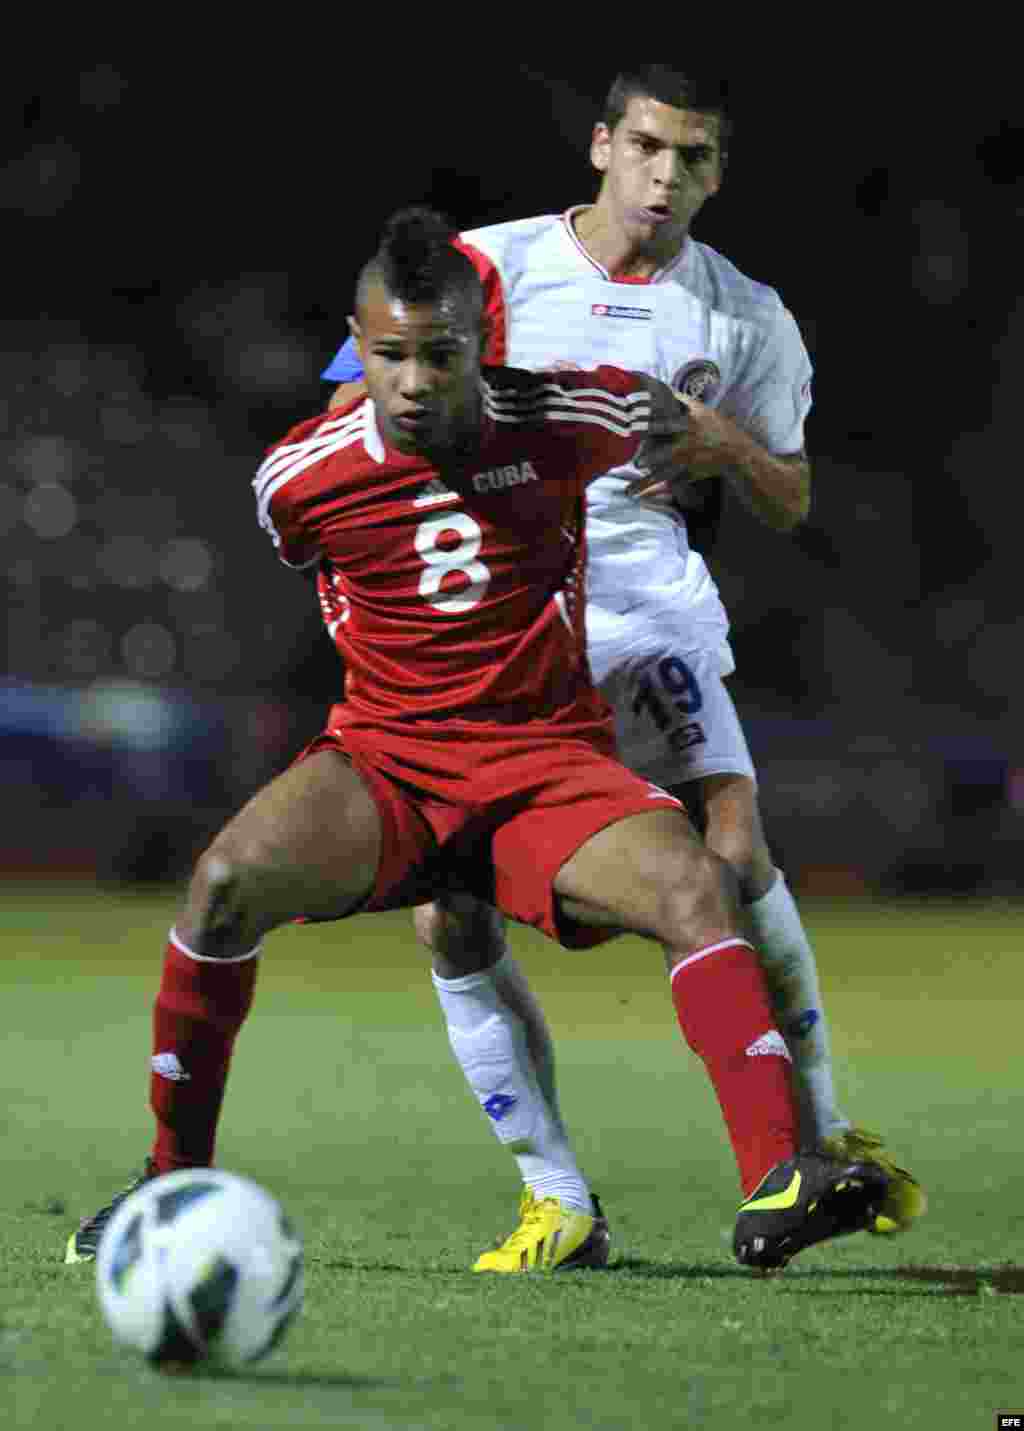  El jugador de Cuba Yordan Santa Cruz (frente) disputa el balón con Jean Carlo Agüero (atrás) de Costa Rica martes 26 de febrero de 2013, durante el partido de cuartos de final de la eliminatoria de la Concacaf para el Mundial Sub'20 de Turquía en el Esta